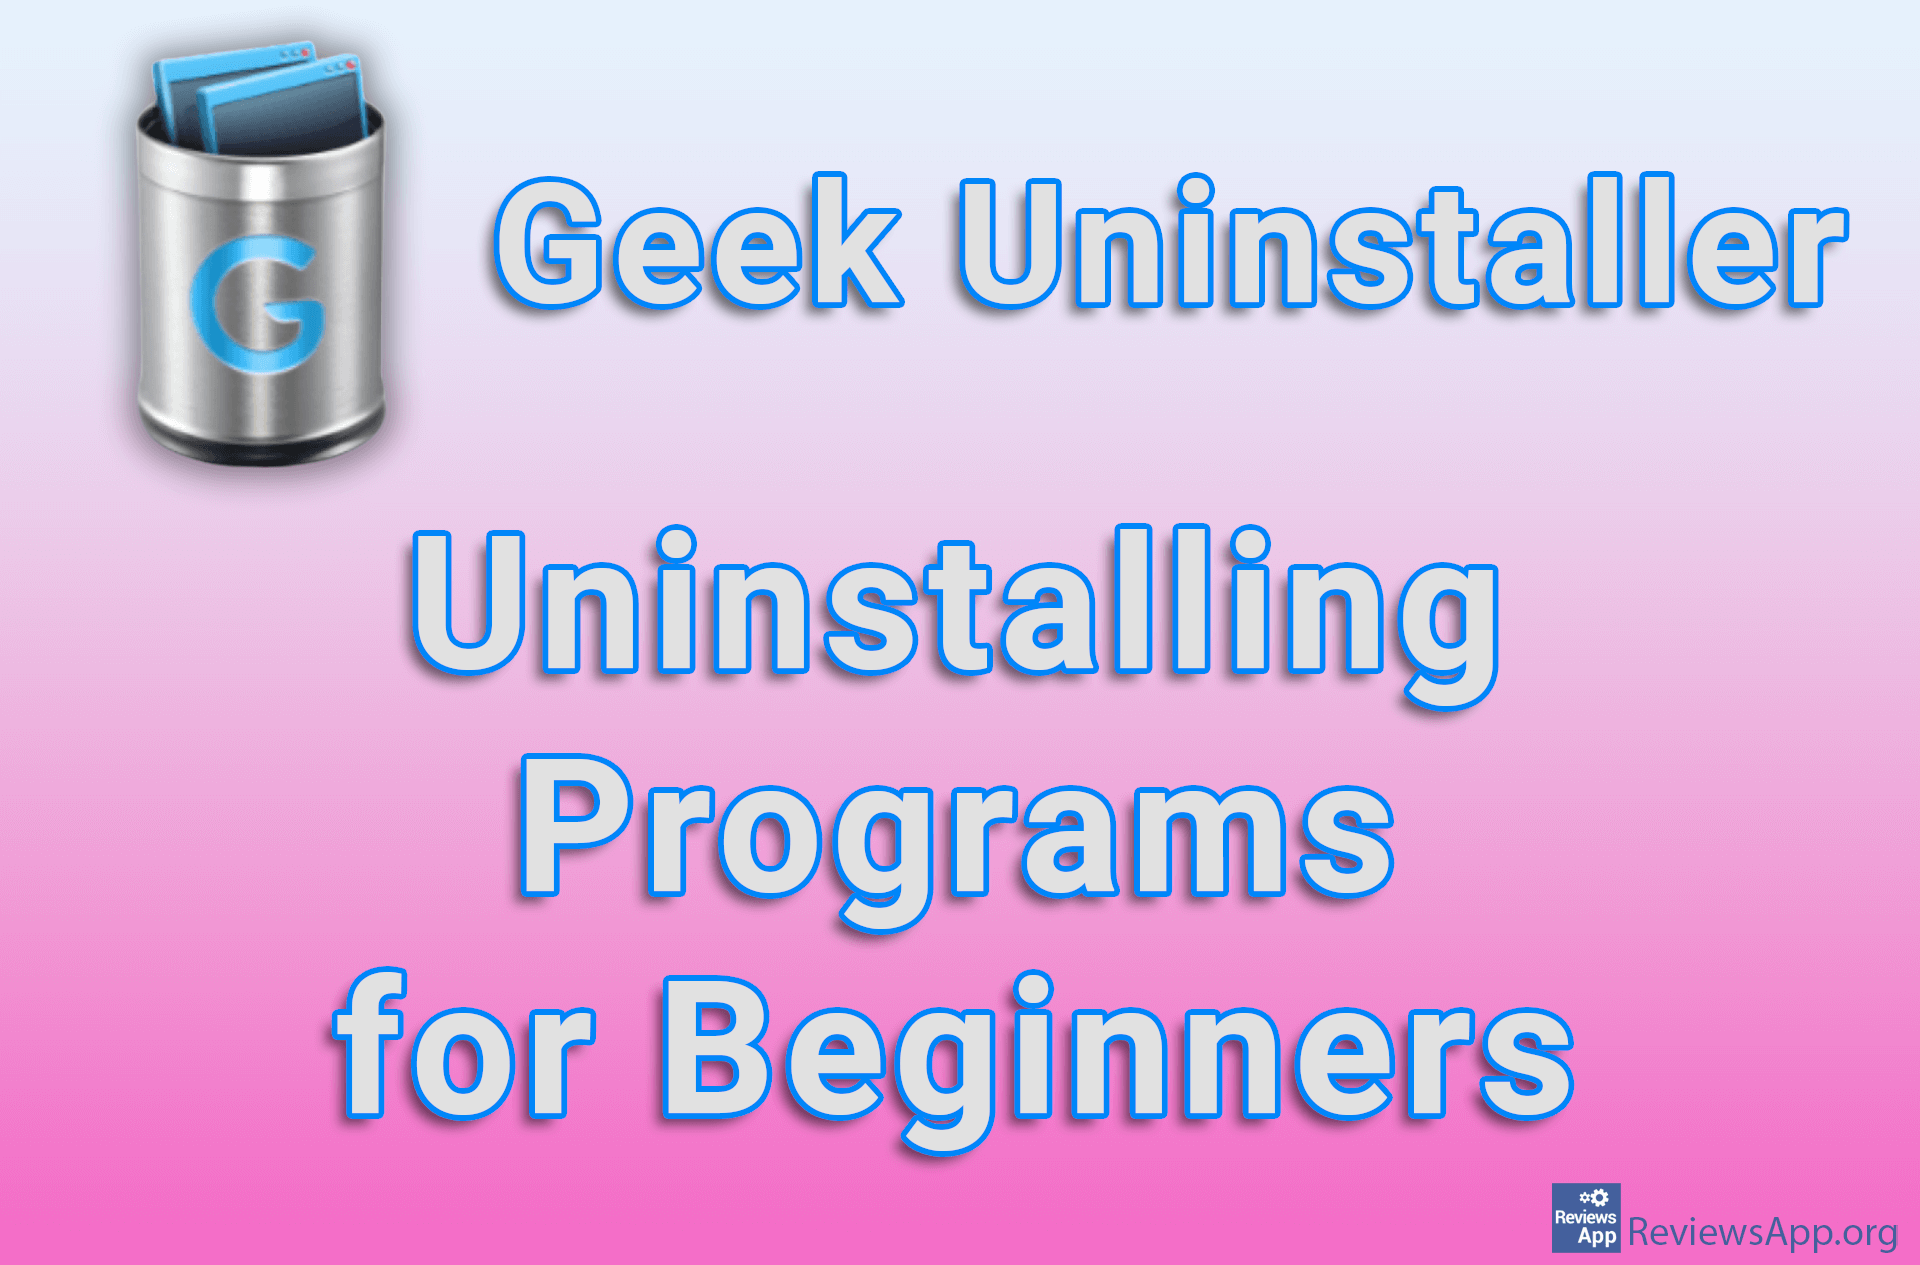 Geek Uninstaller – Uninstalling Programs for Beginners